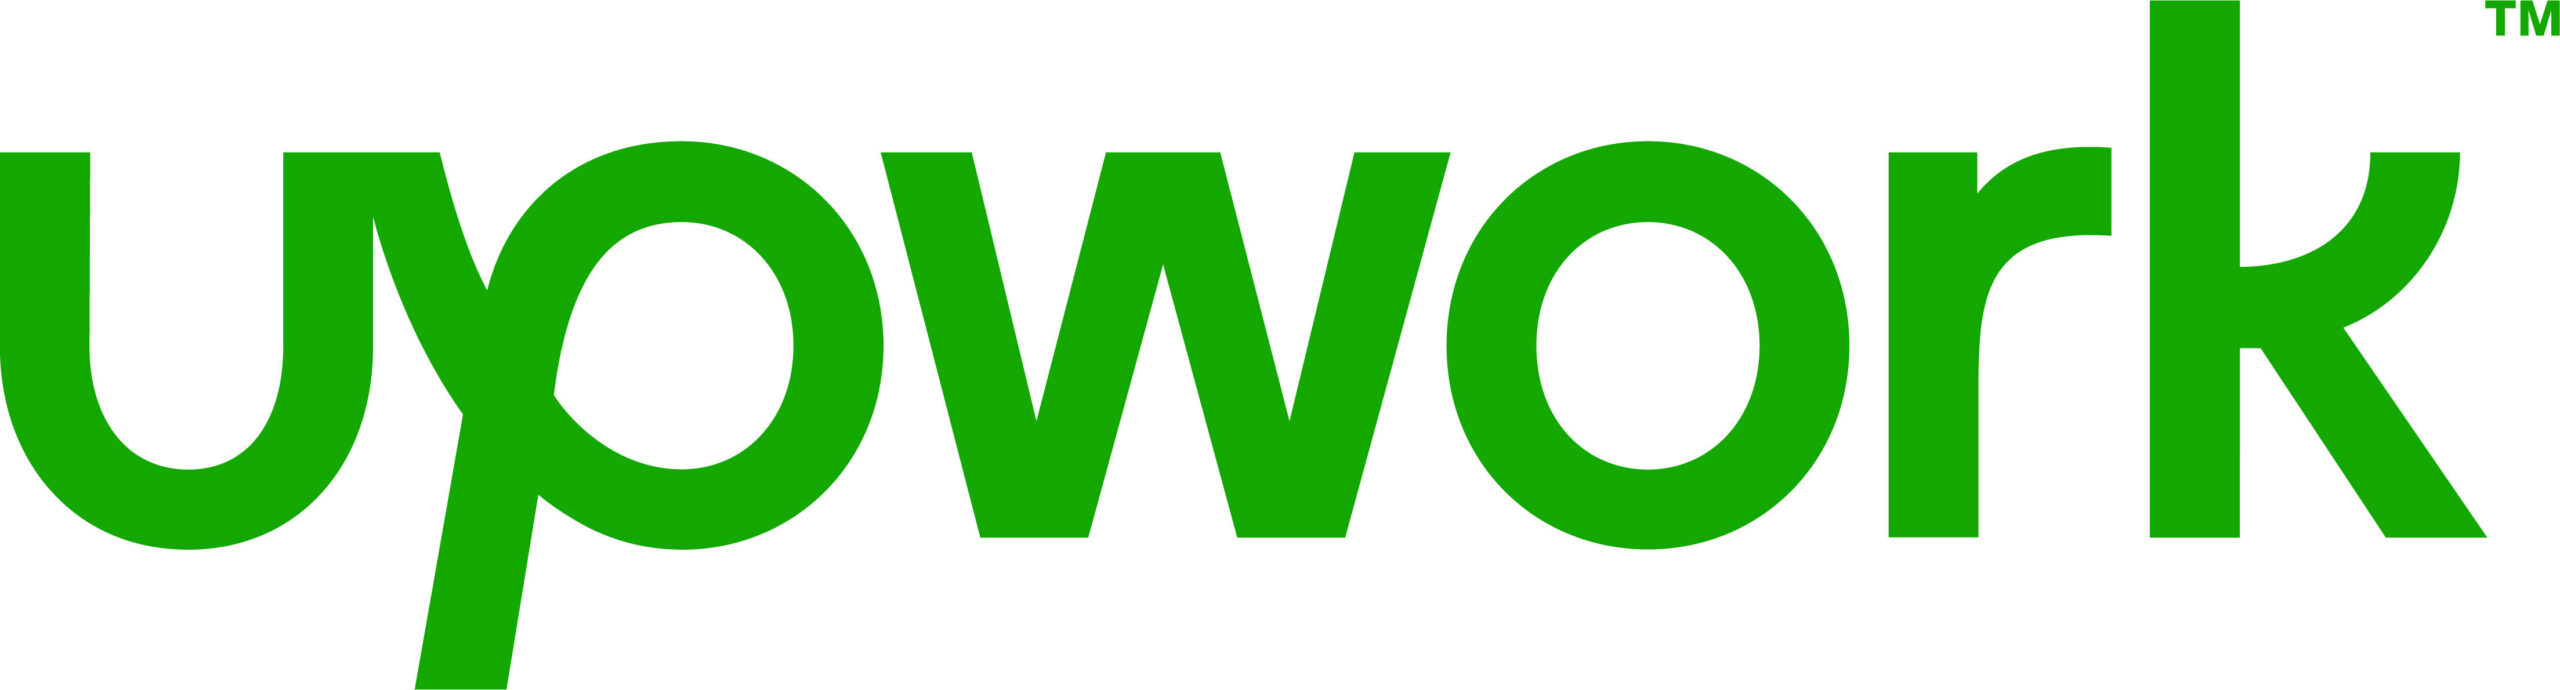 NEW_Upwork_Logo